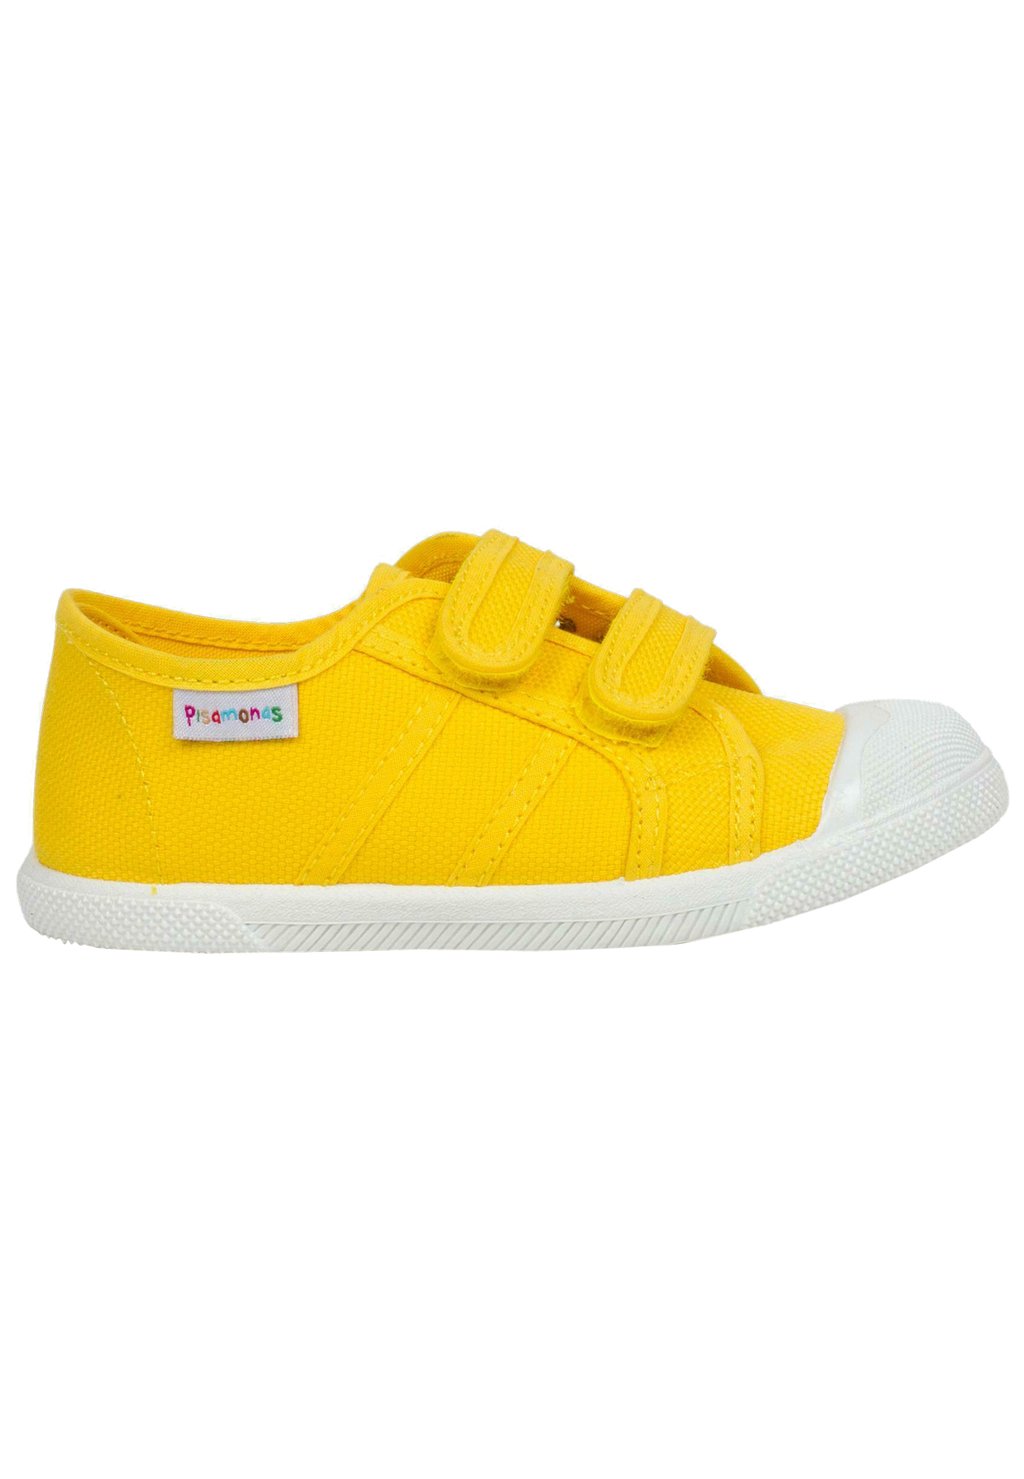 Первая обувь для ходьбы Pisamonas, цвет amarillo первая обувь для ходьбы bata цвет bianco